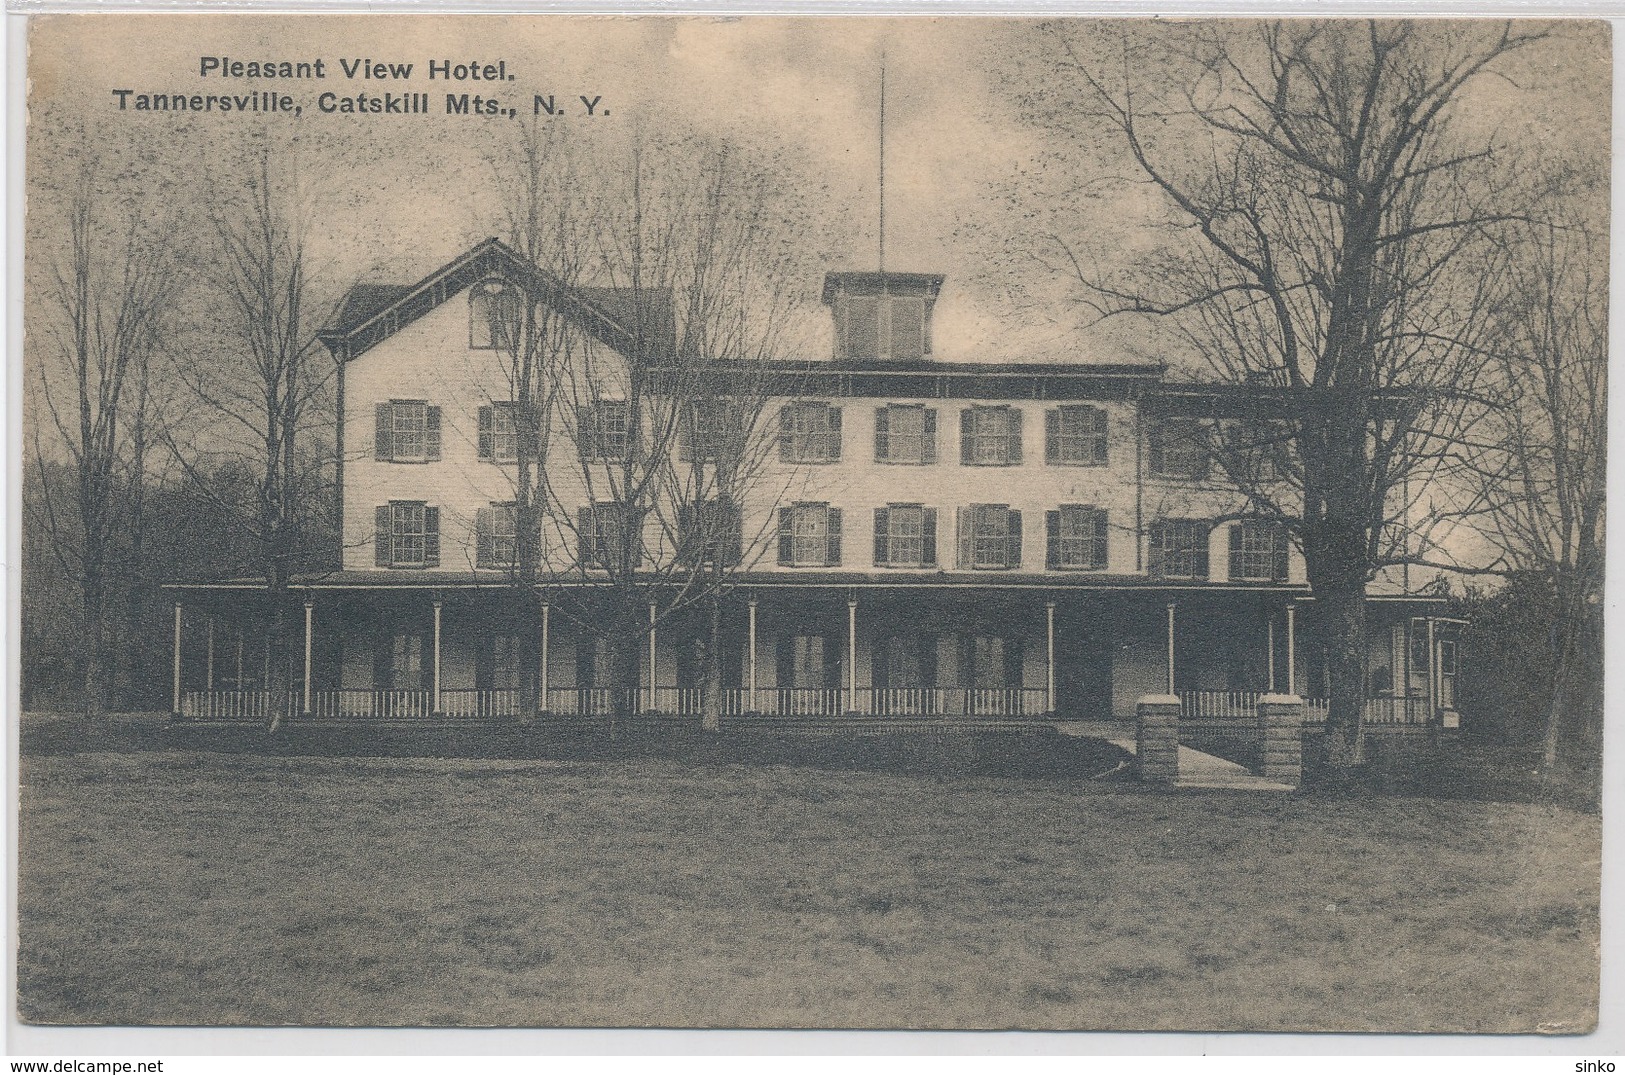 Pleasant View Hotel. Tannersville, Catskill Mts., N.Y. - Catskills